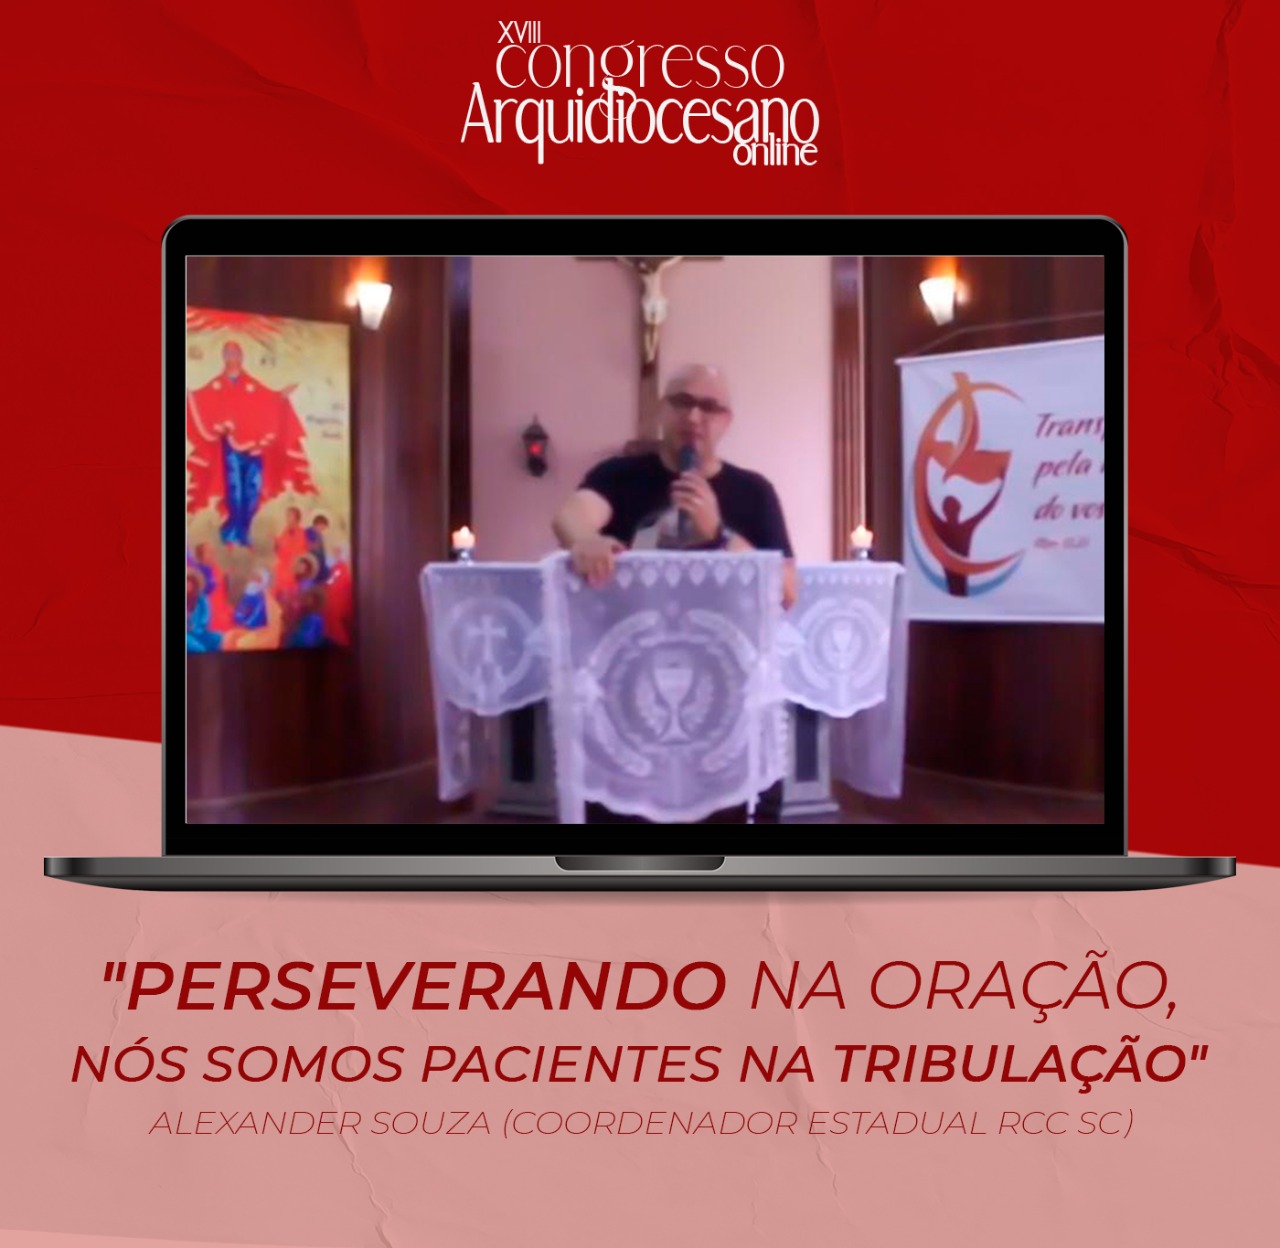 Primeira Pregação - Alexander Souza | XVlll Congresso Arquidiocesano